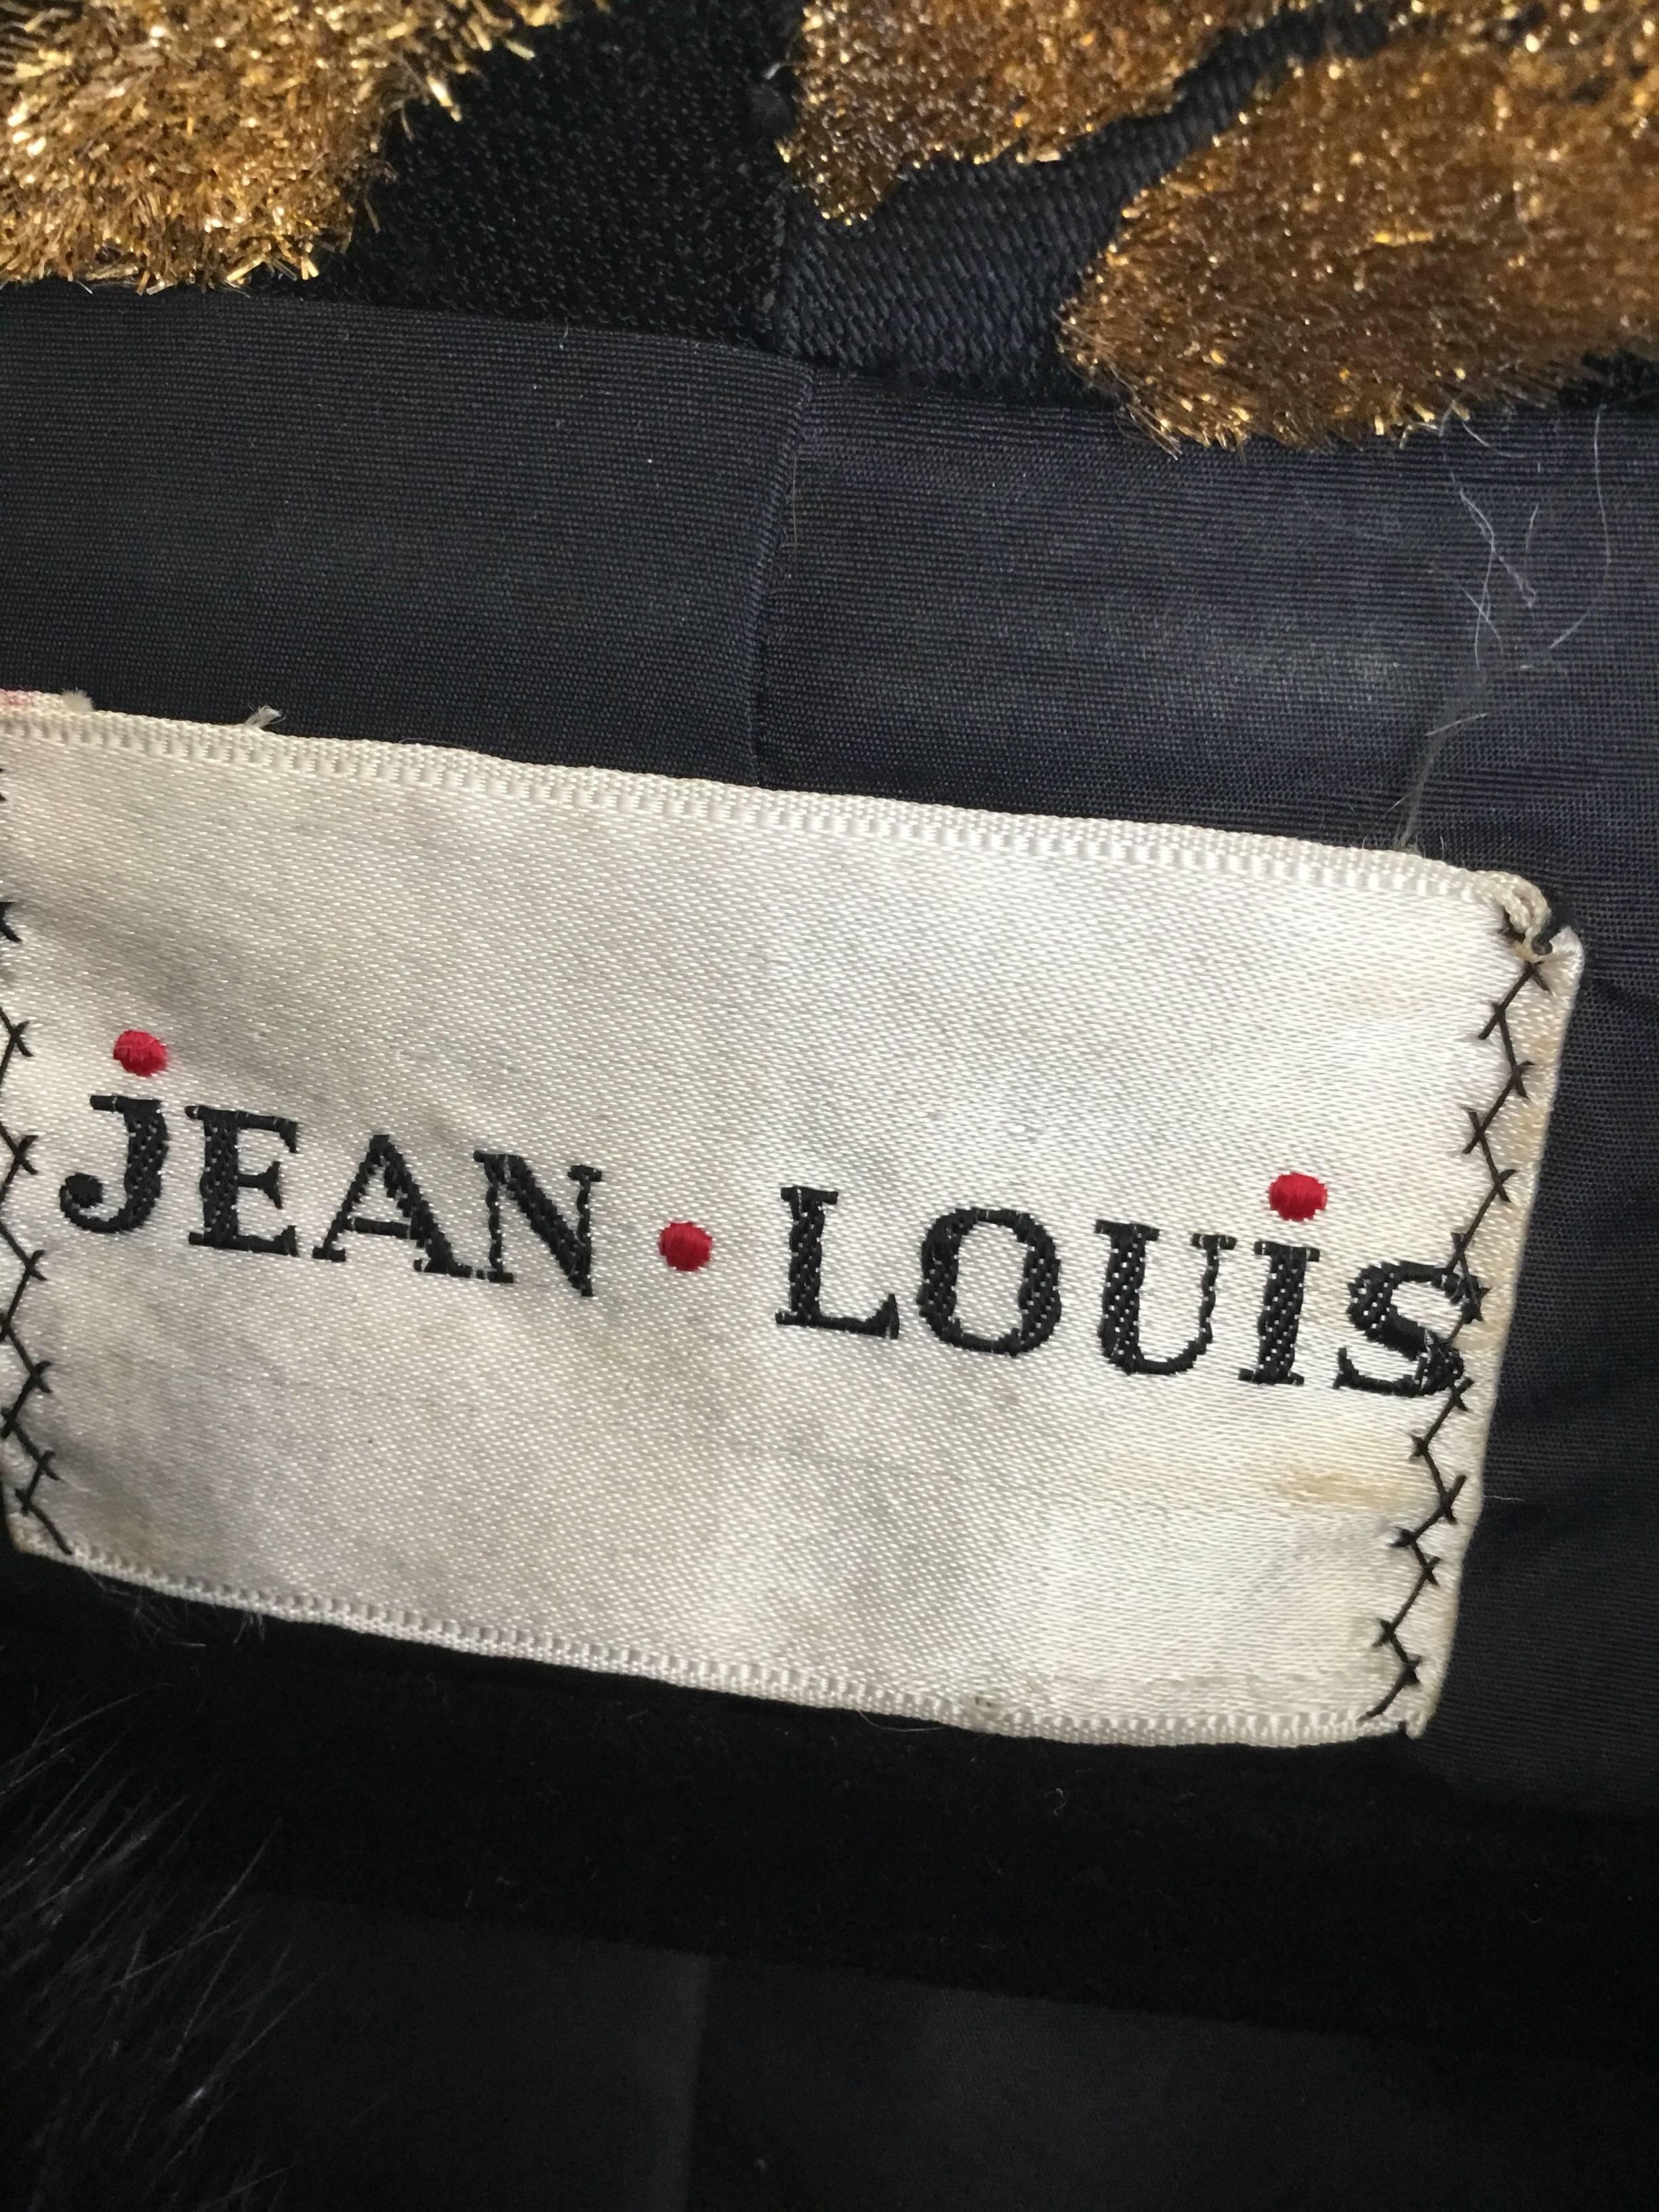 Jean Louis Gold Lamé Dress Jacket Suit, 1960s  3